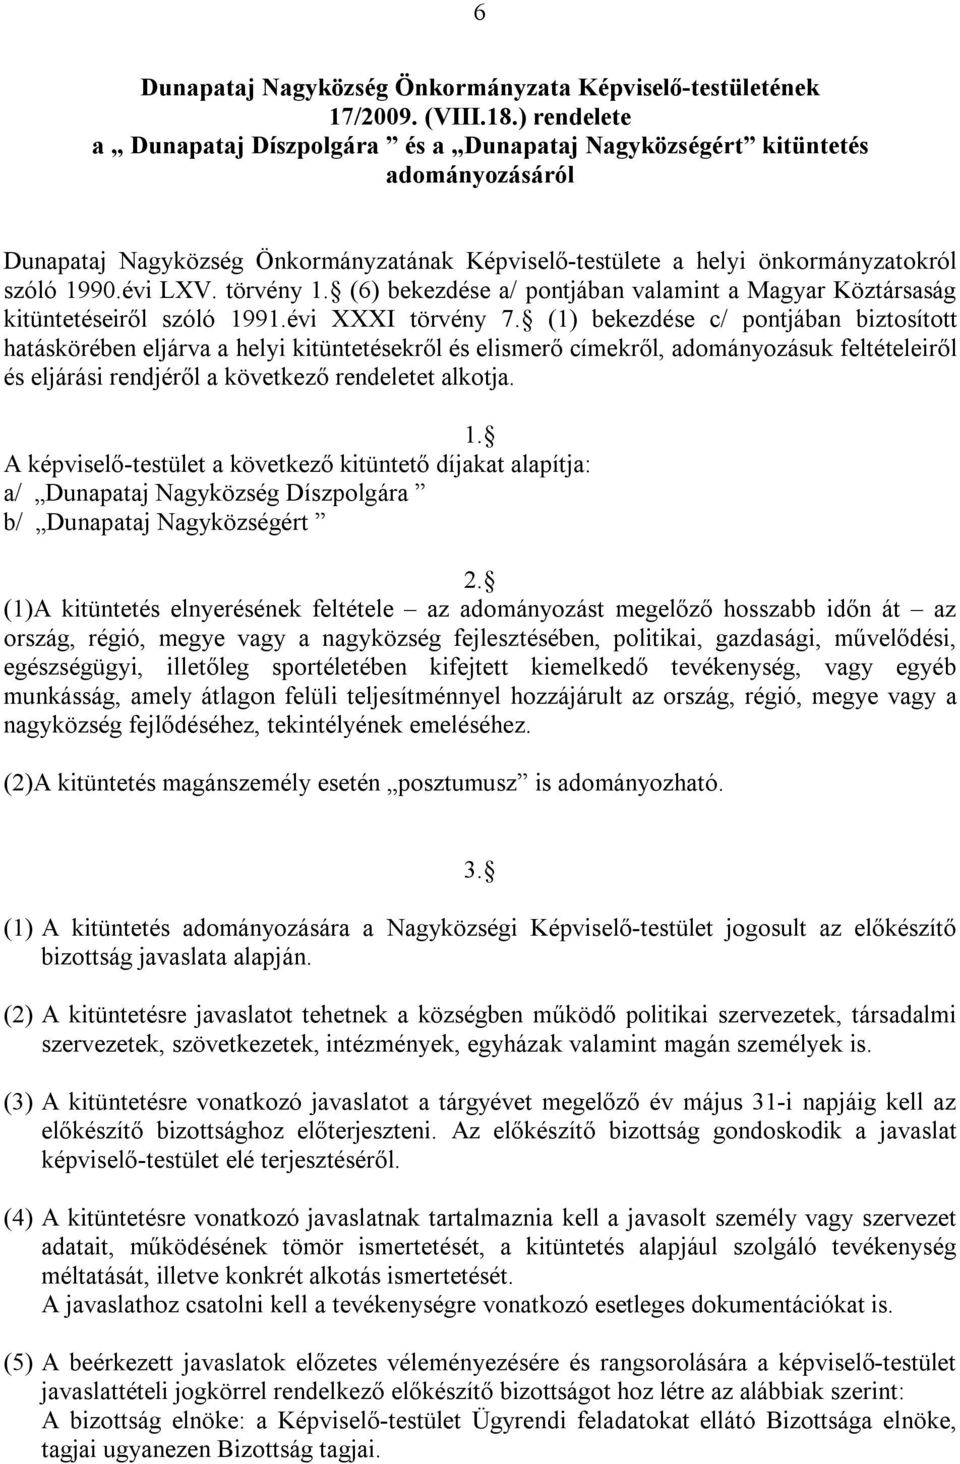 törvény 1. (6) bekezdése a/ pontjában valamint a Magyar Köztársaság kitüntetéseiről szóló 1991.évi XXXI törvény 7.